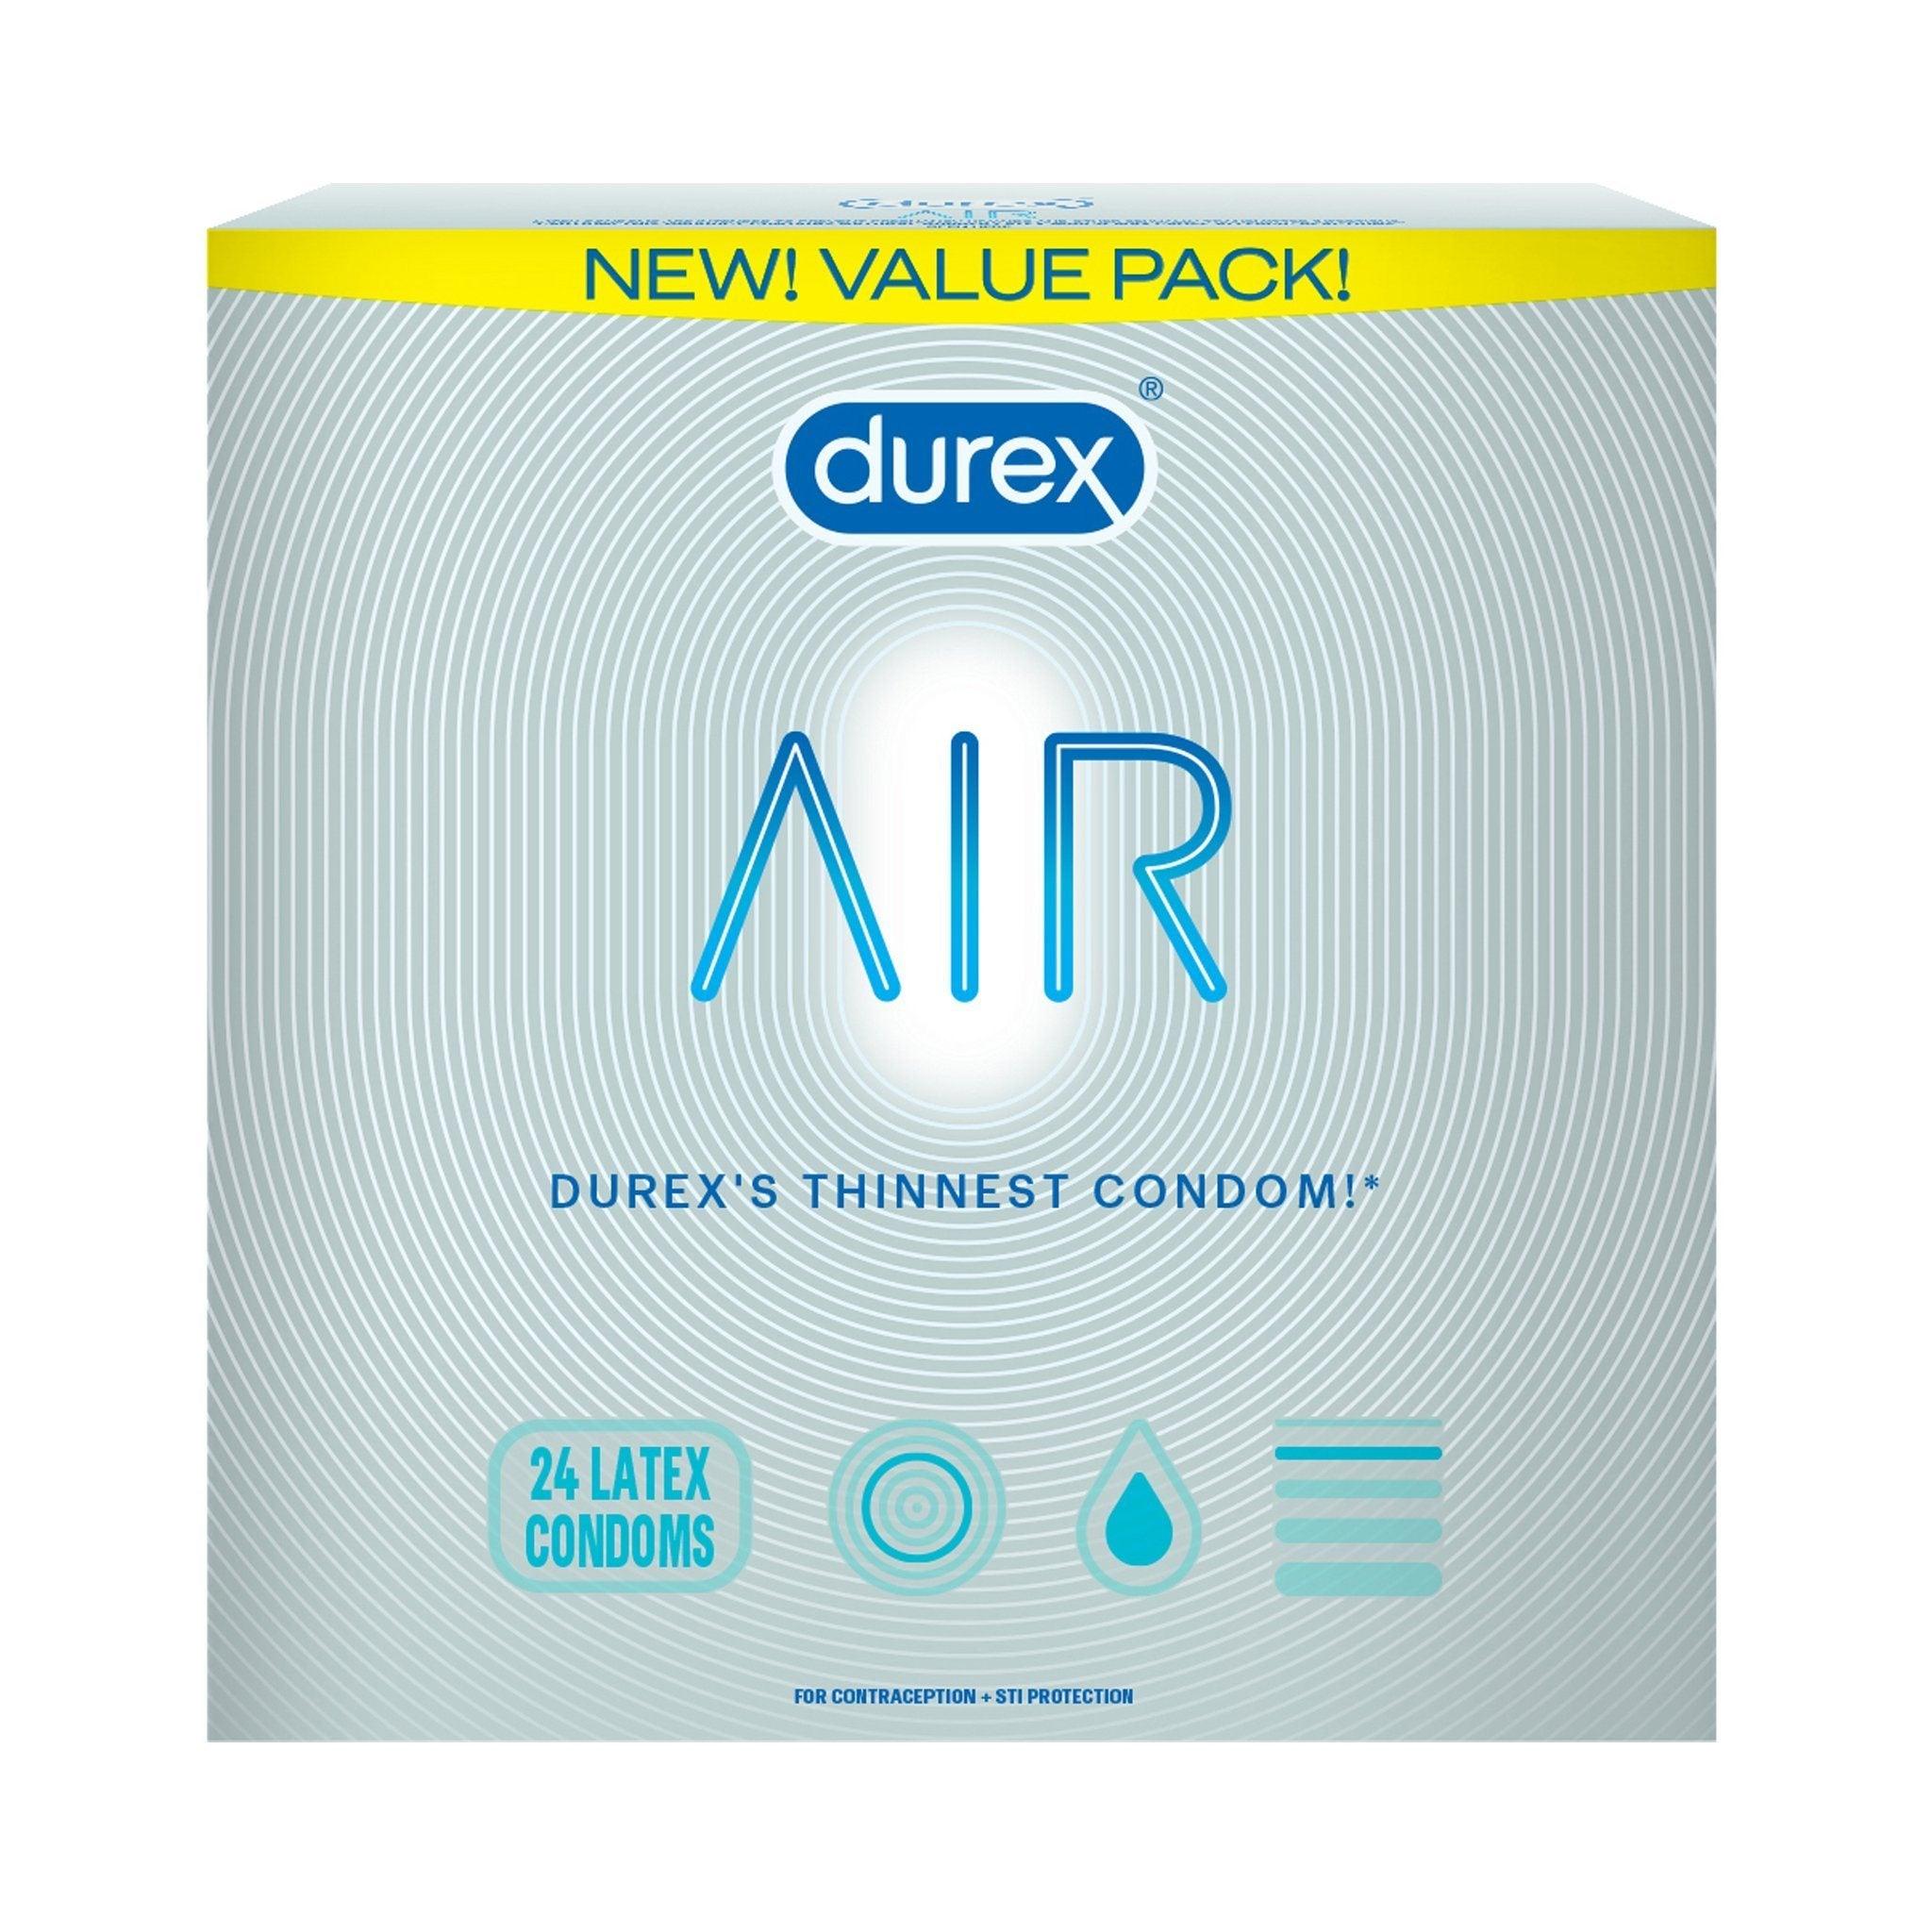 Durex AIR Original Condoms Value Pack - 24pk - CheapLubes.com